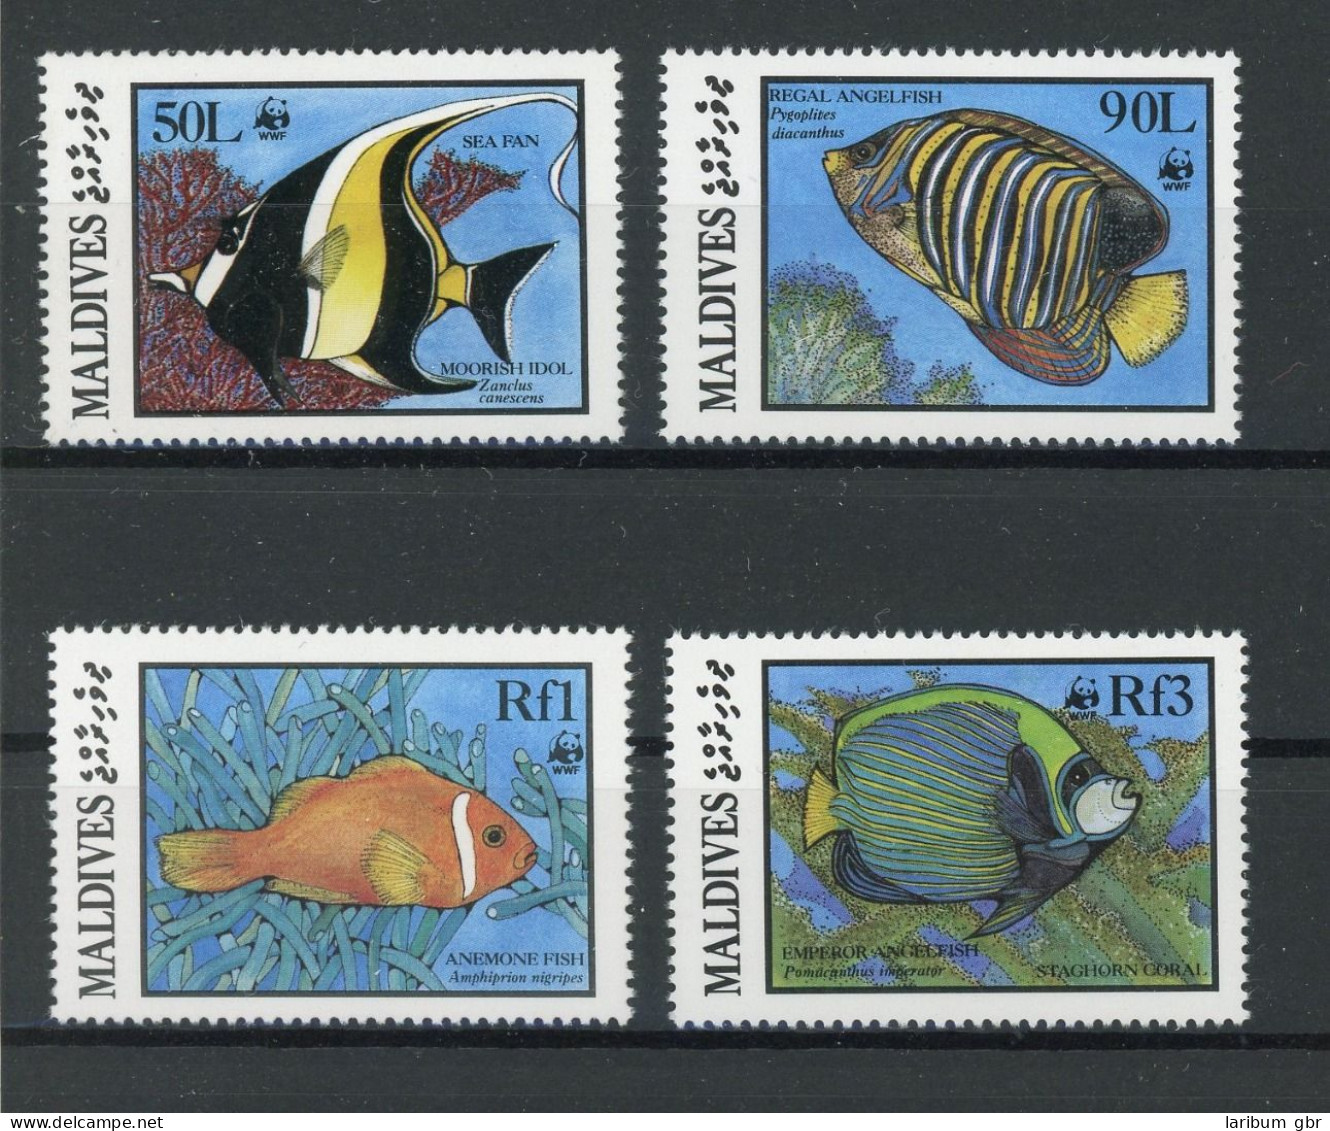 Malediven 1198-1201 Postfrisch Fische #IJ381 - Maldives (1965-...)